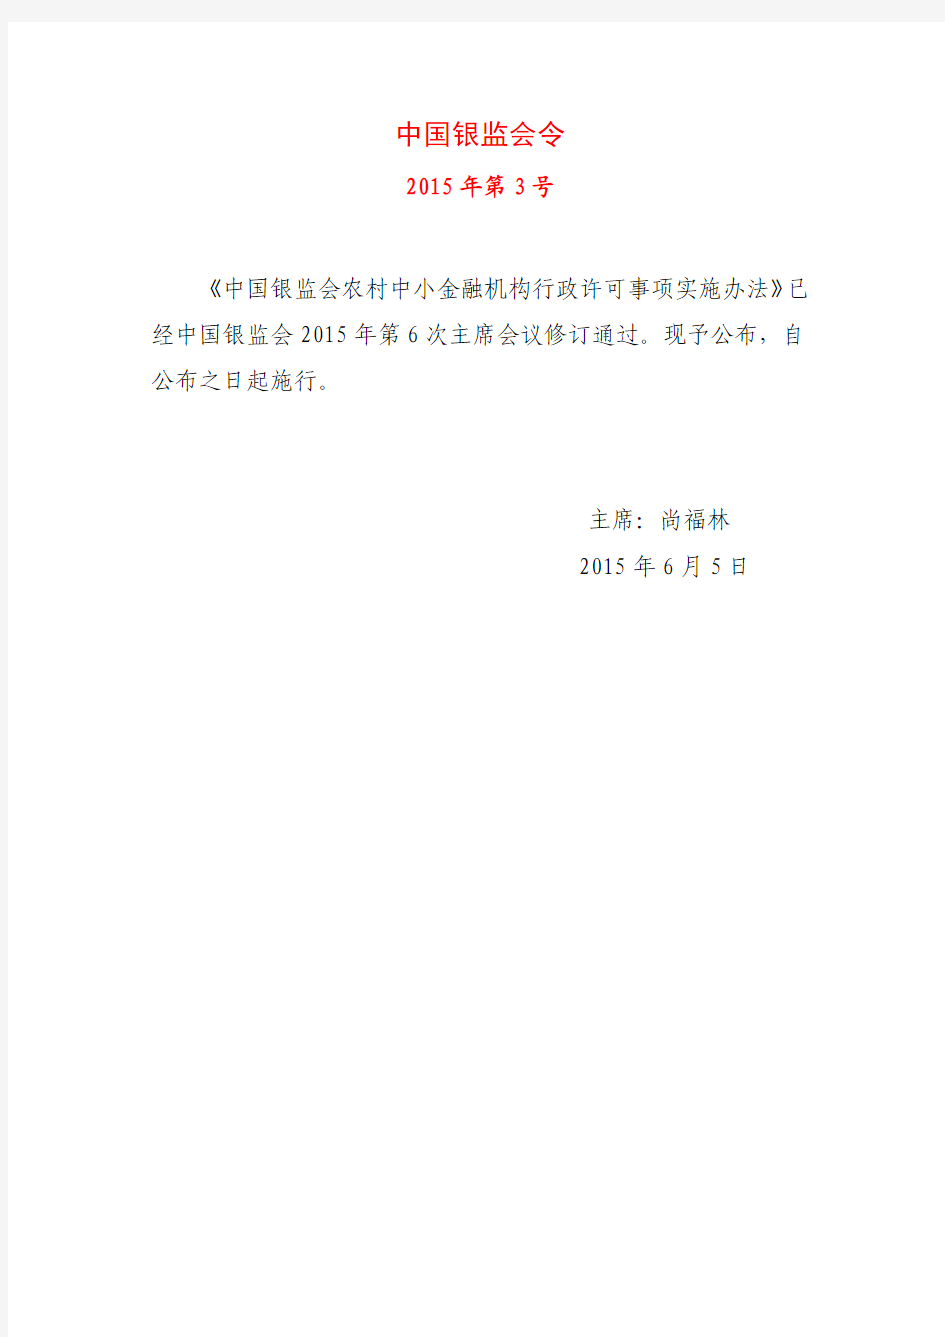 2015年6月5日中国银监会农村中小金融机构行政许可事项实施办法